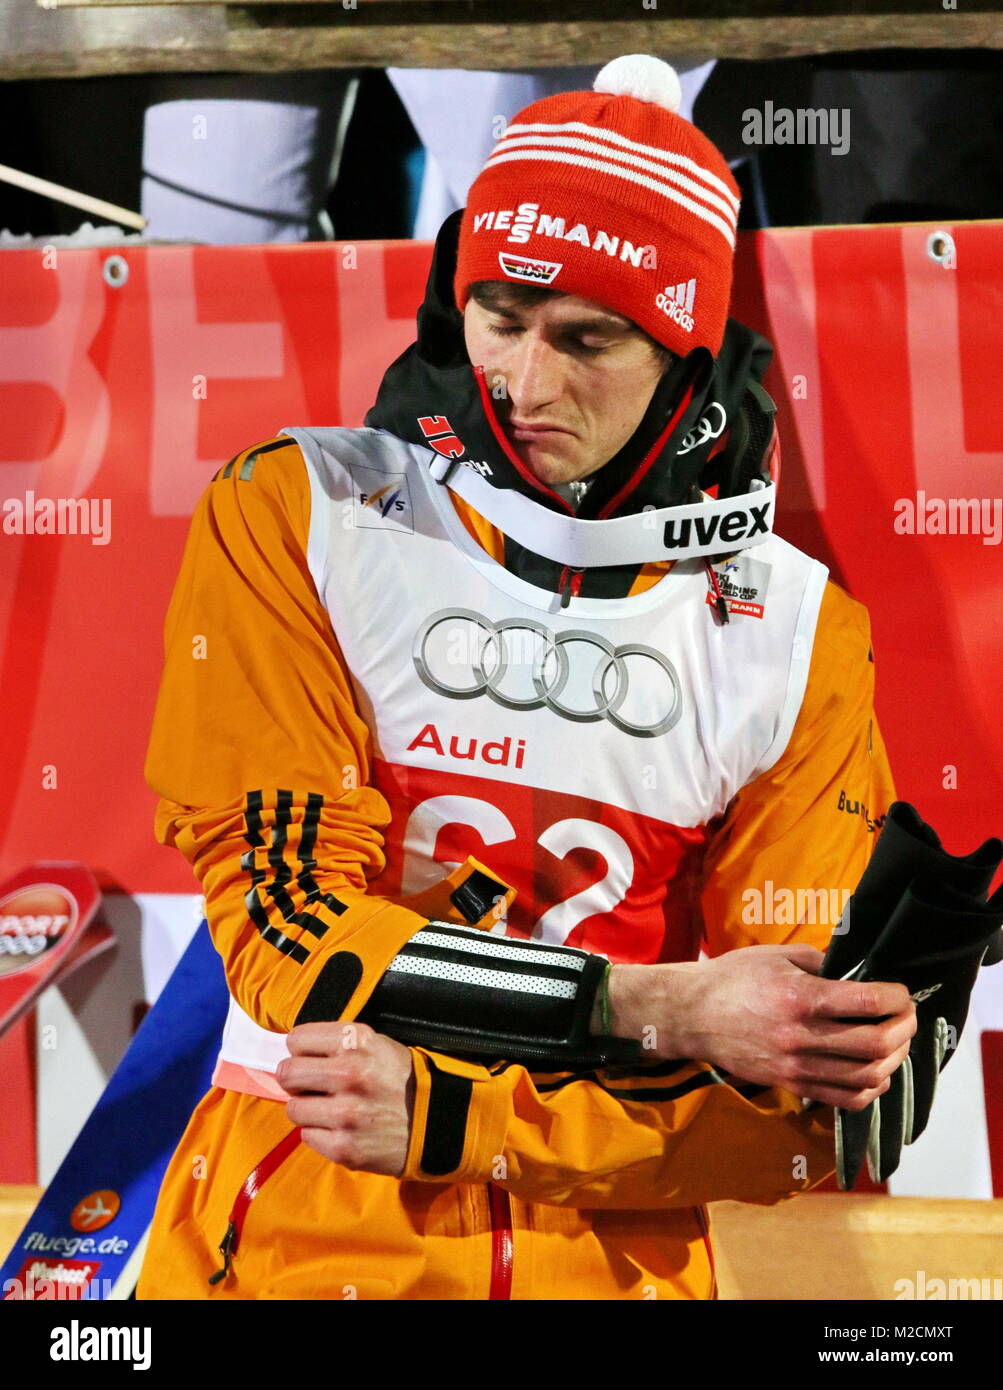 Richard Freitag, Skispringer, Qualfikation für 63. Vierschanzentournee Auftaktspringen Oberstdorf Foto de stock